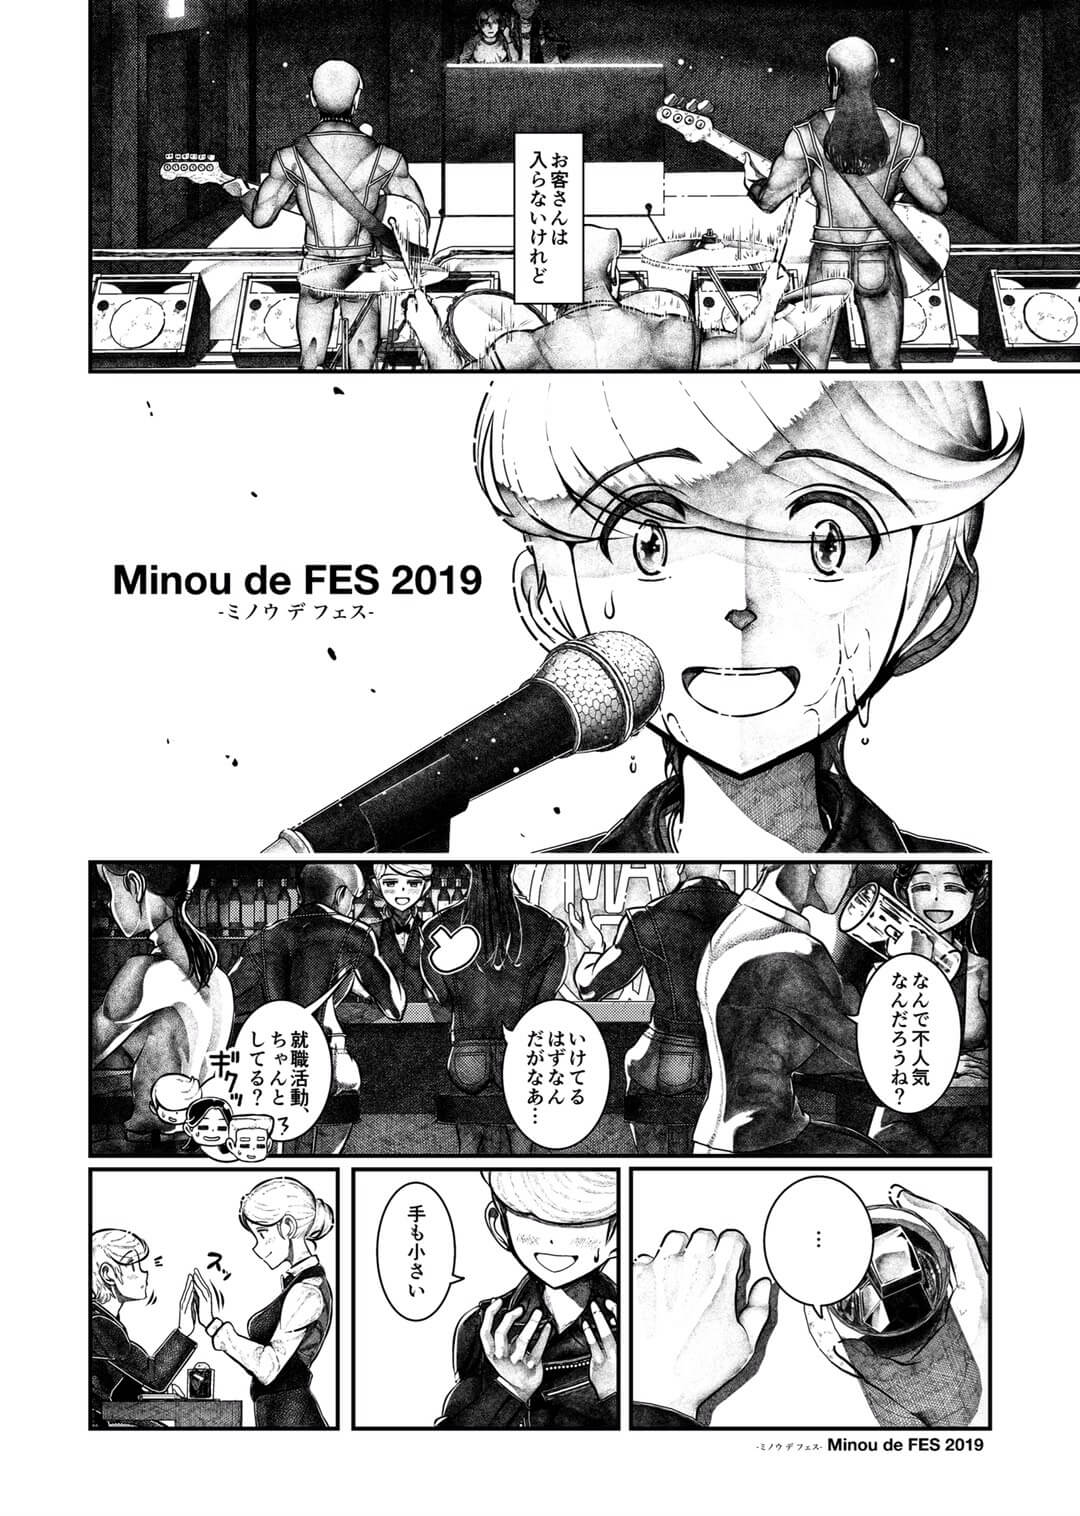 ミノウデフェスオリジナル漫画02